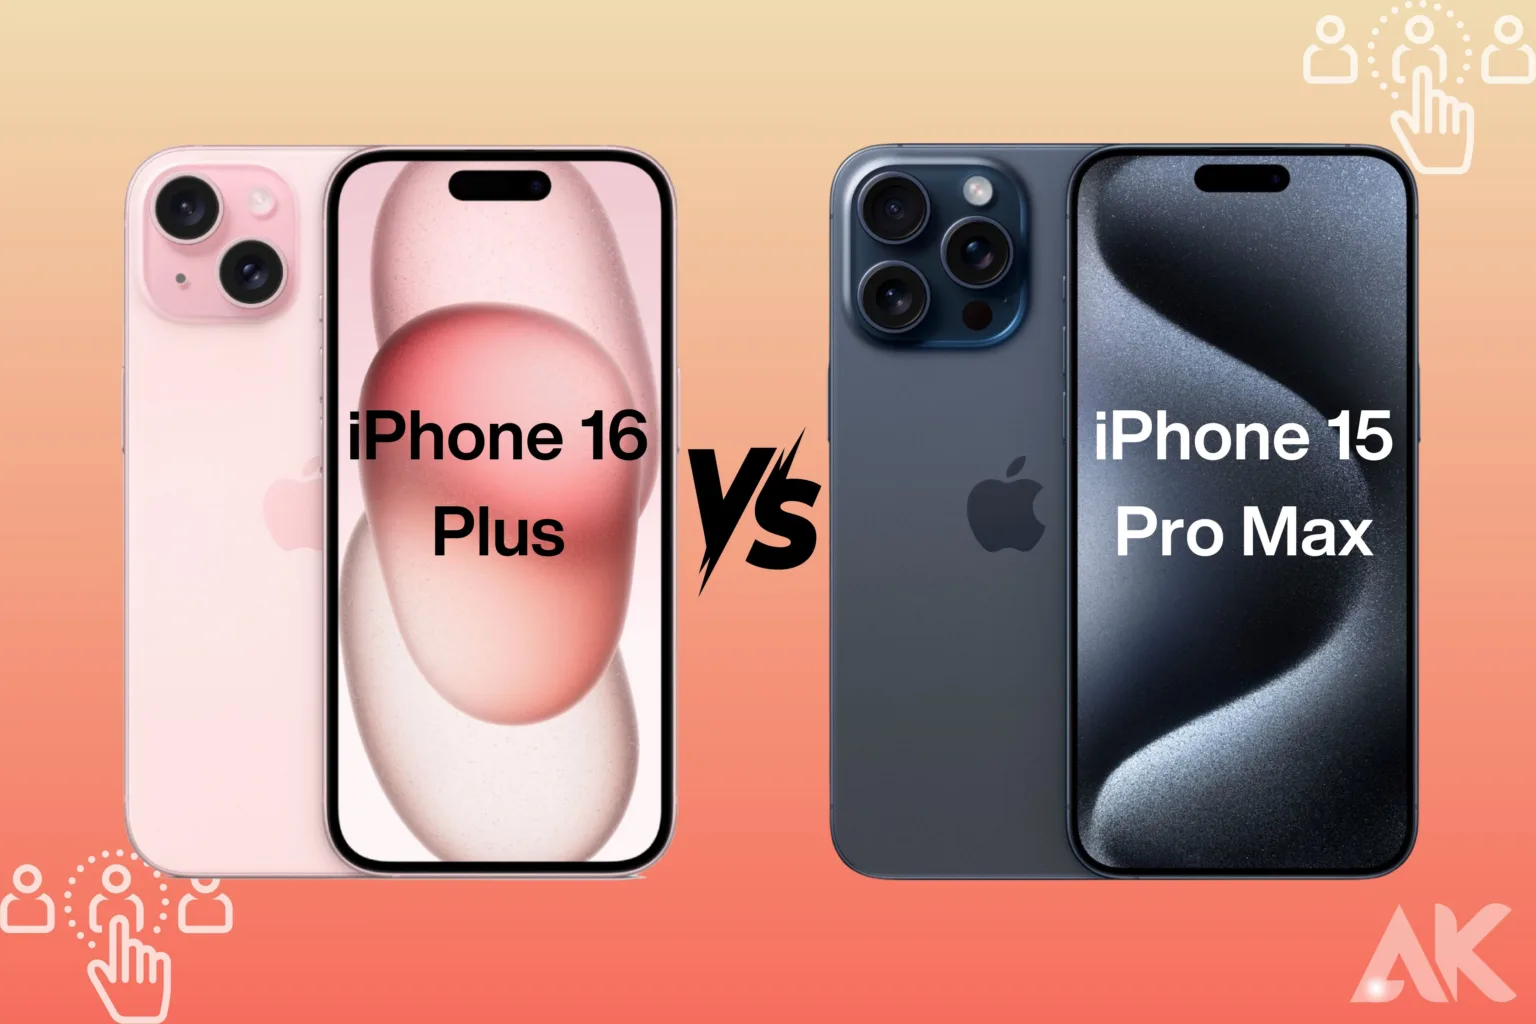 iPhone 16 Plus vs iPhone 15 Pro Max